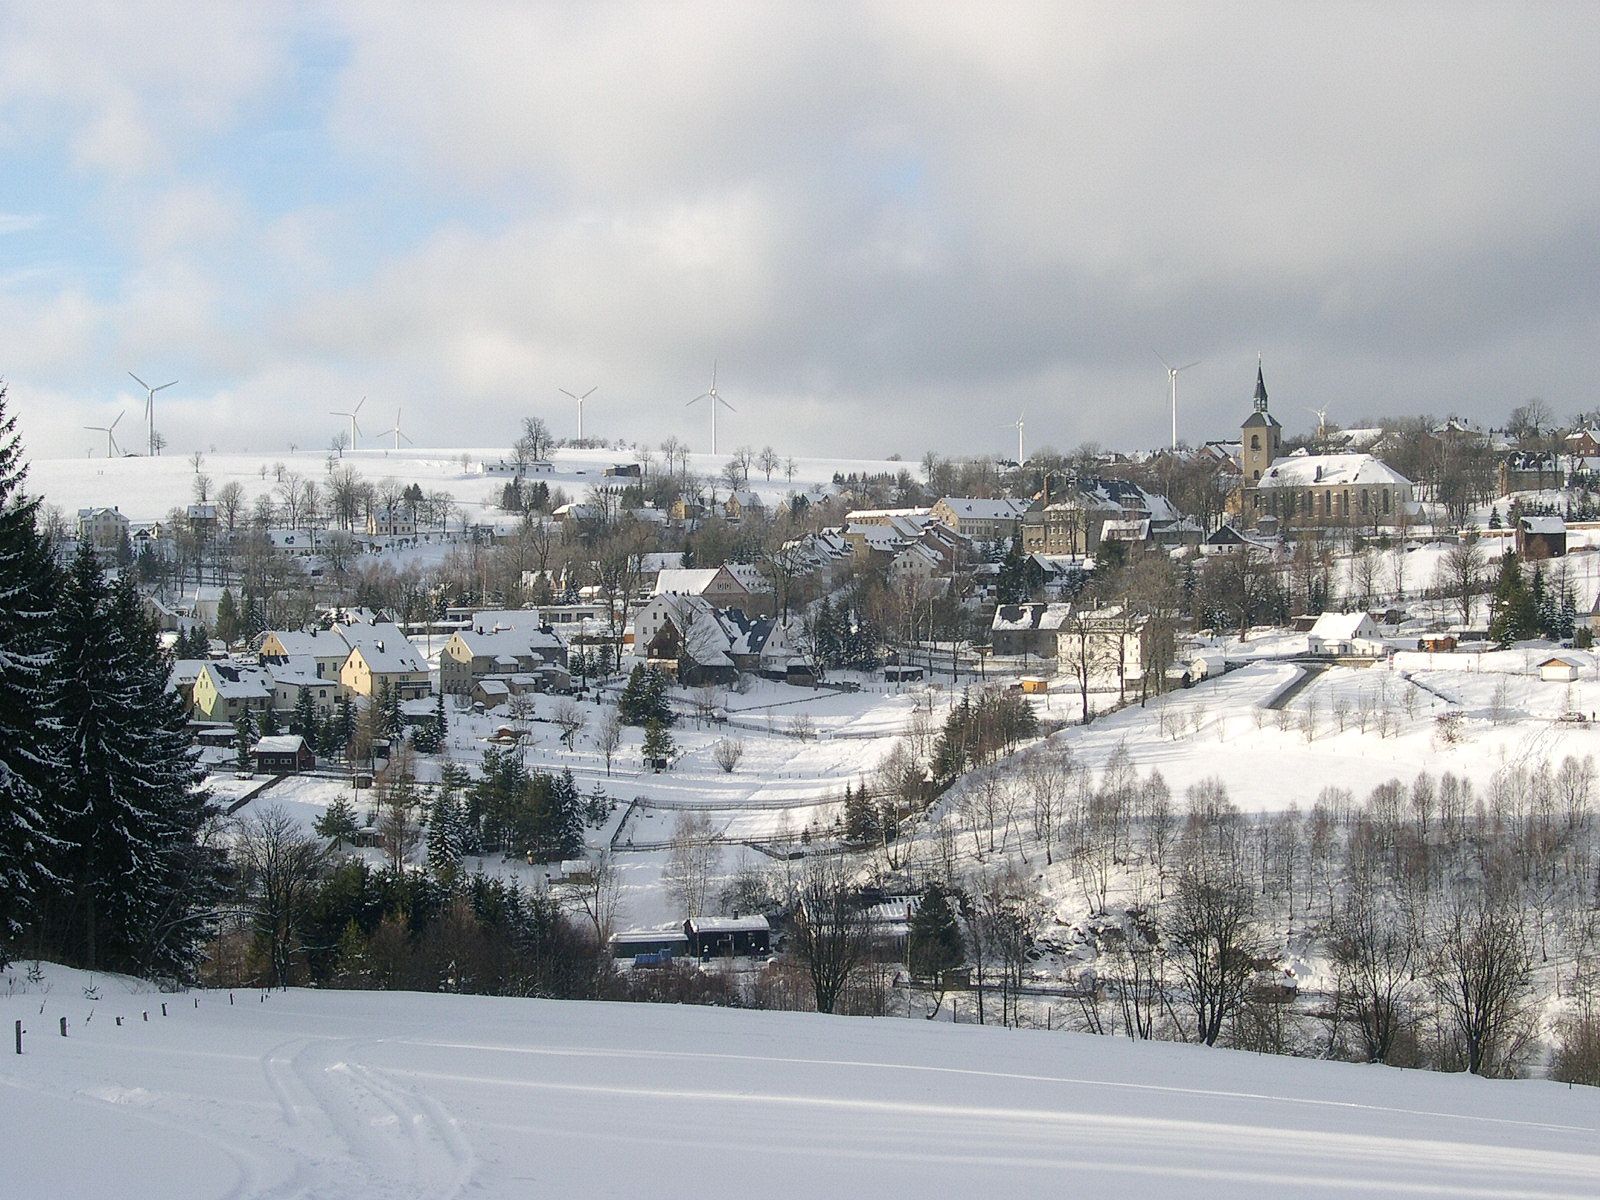 Blick auf die schneebedeckte Kulisse der Bergstadt Jöhstadt mit Lokschuppen im unteren Bilddrittel und St. Salvator-Kirche in der Bildmitte